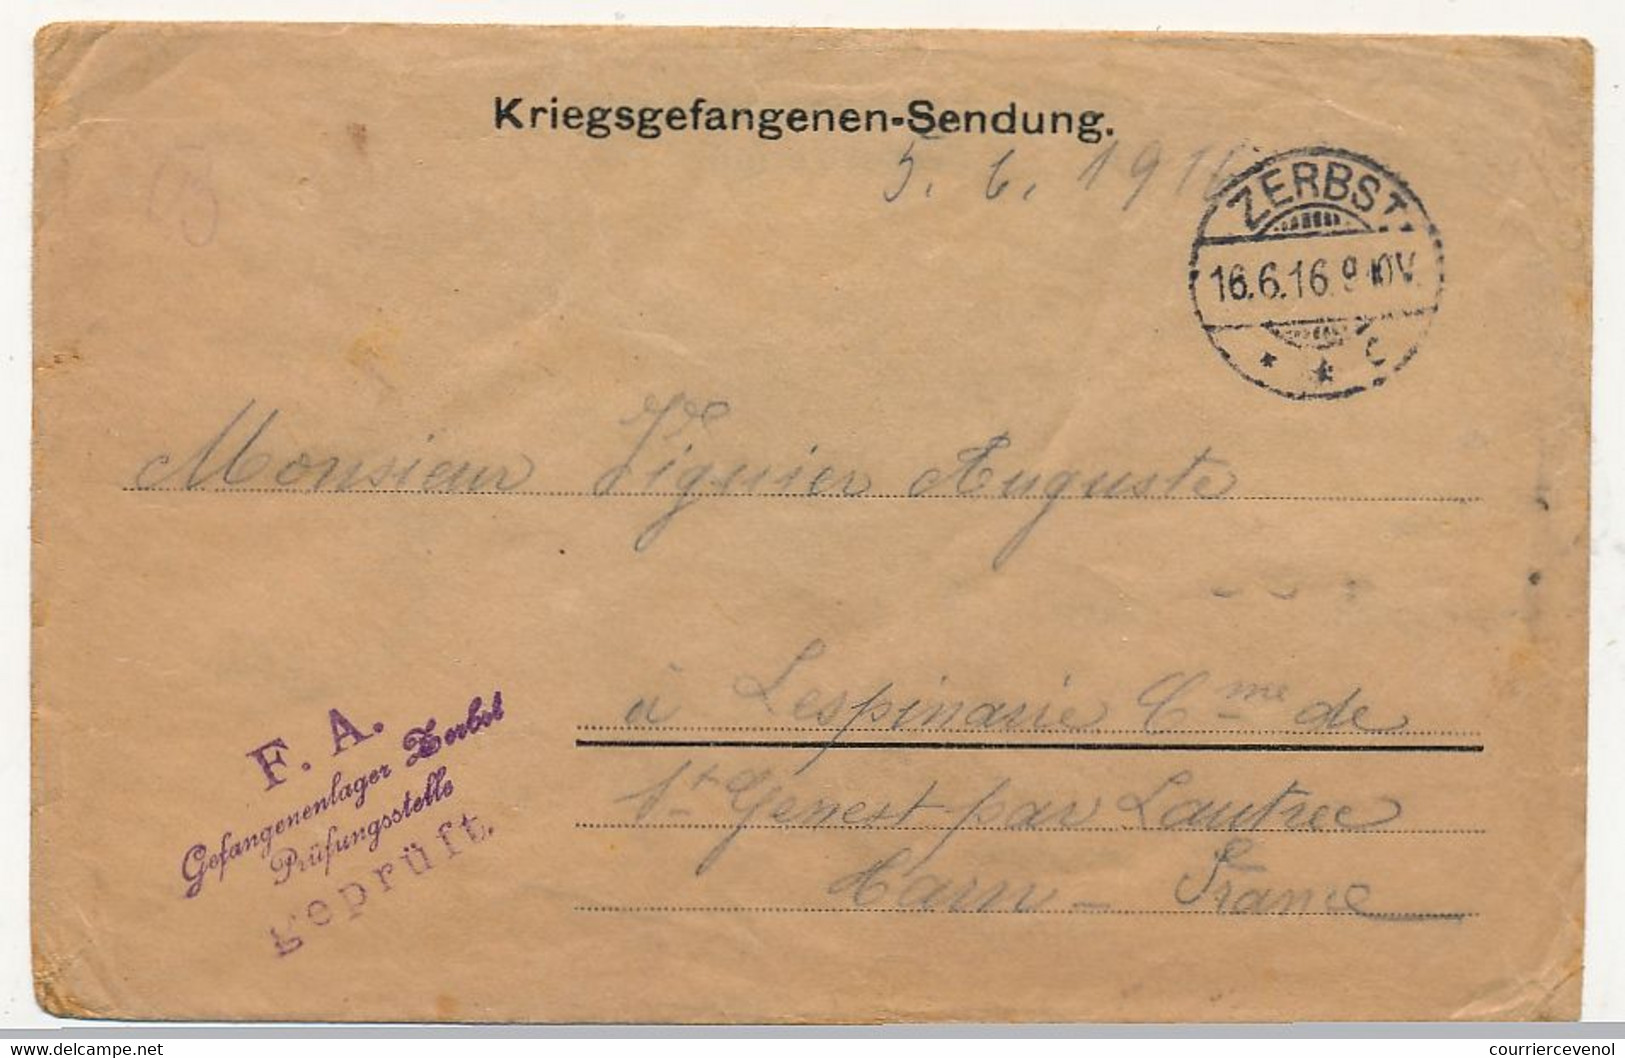 Enveloppe Prisonnier Français - Camp De Zerbst (Anh) - 16/6/1916 - Bilingue Russe / Français - Censure - 1. Weltkrieg 1914-1918